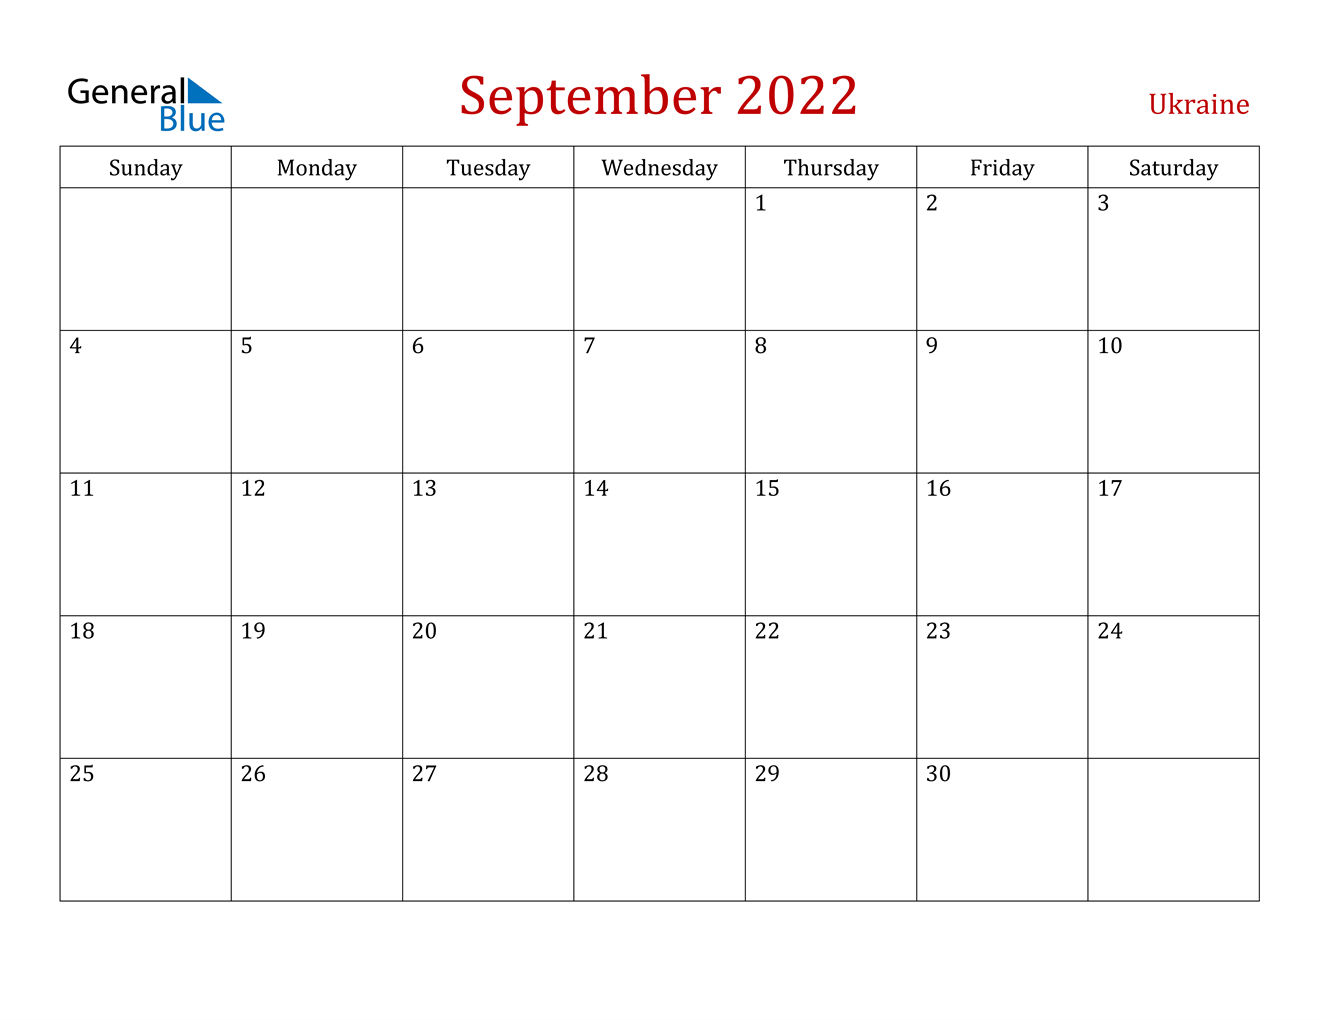 September 2022 Calendar - Ukraine